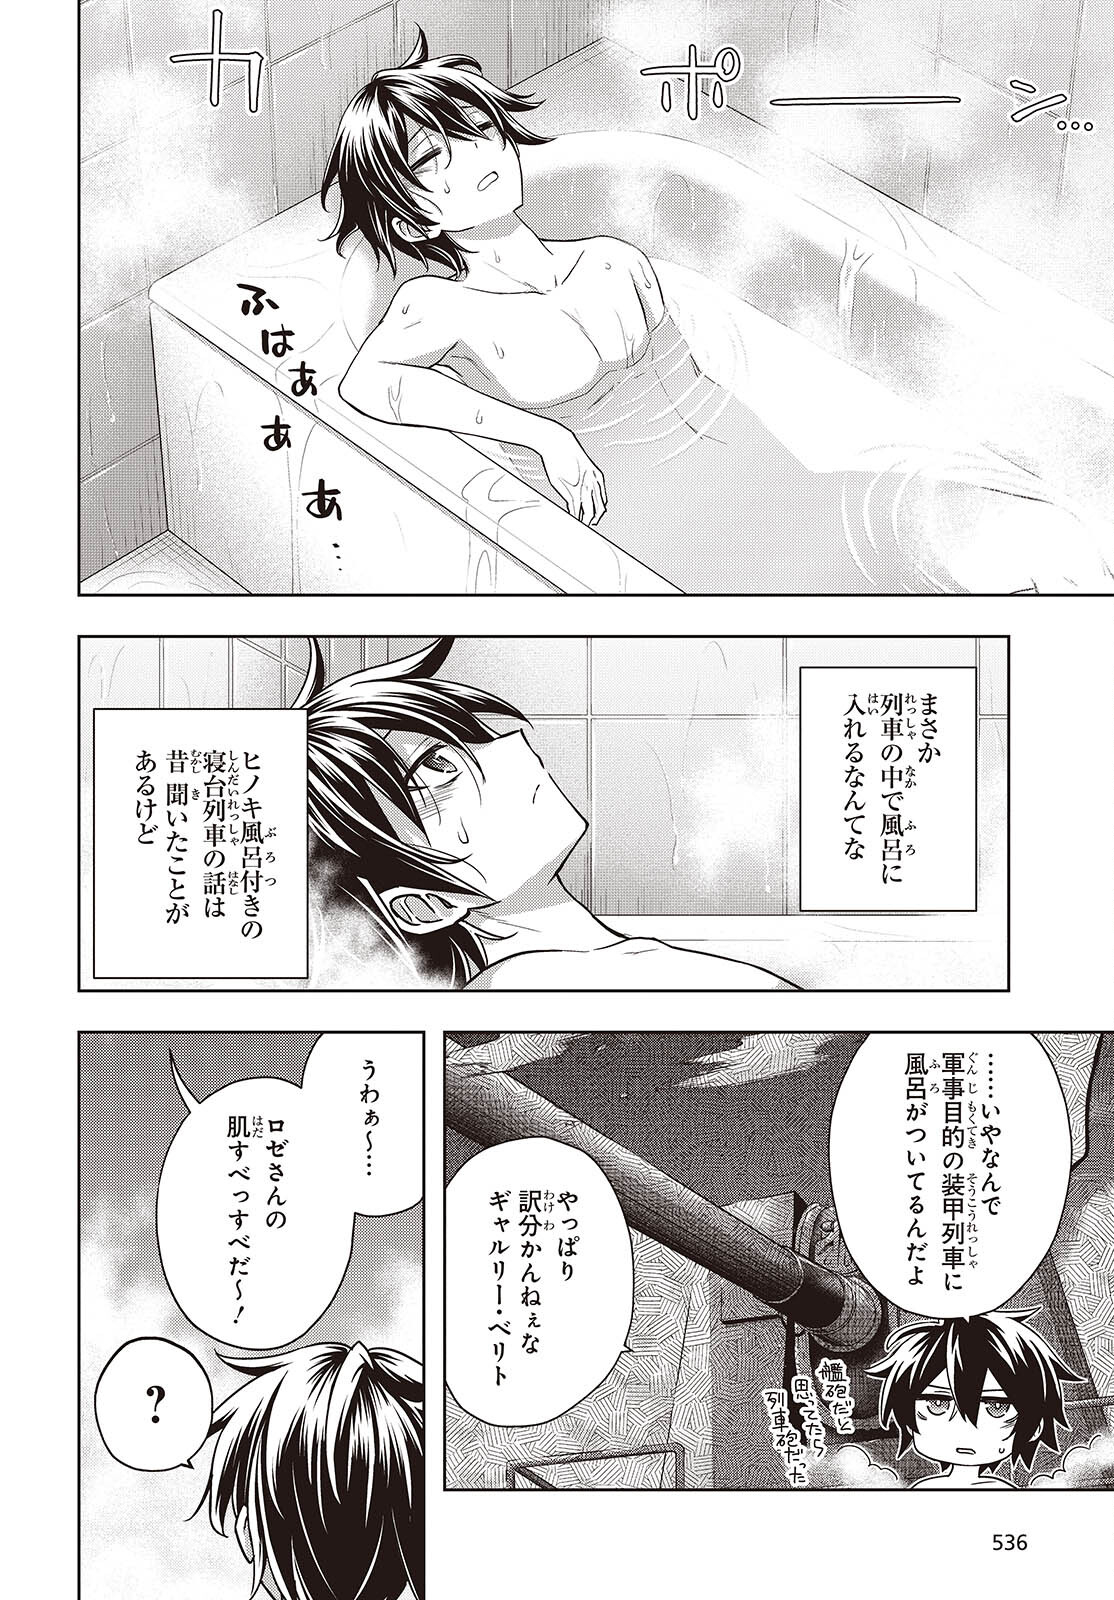 Utsuro Naru Regalia - Chapter 16 - Page 2